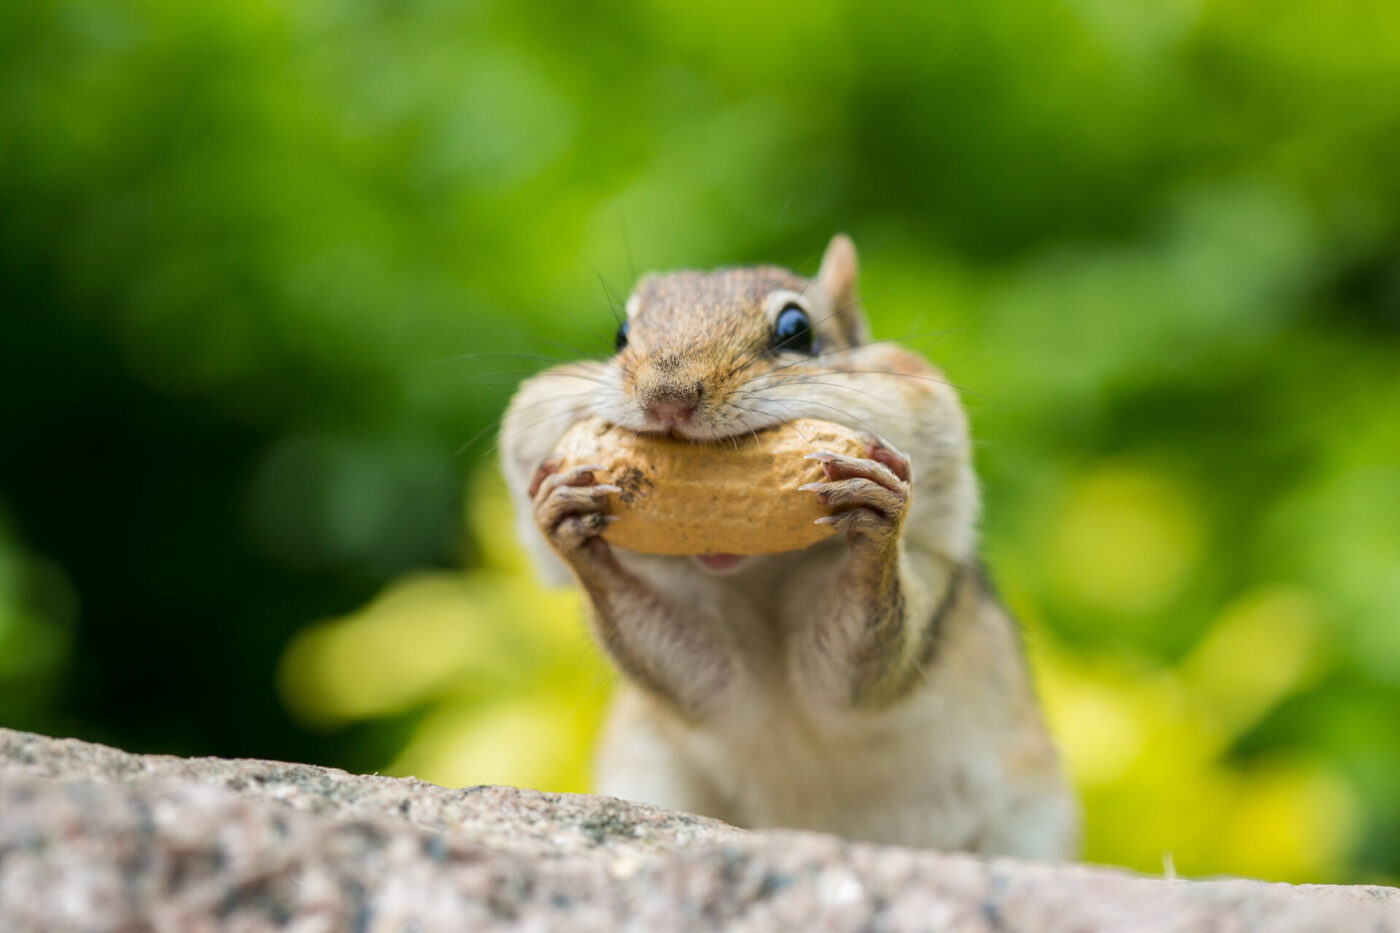 mókus mogyorót eszik, megbízási szerződés